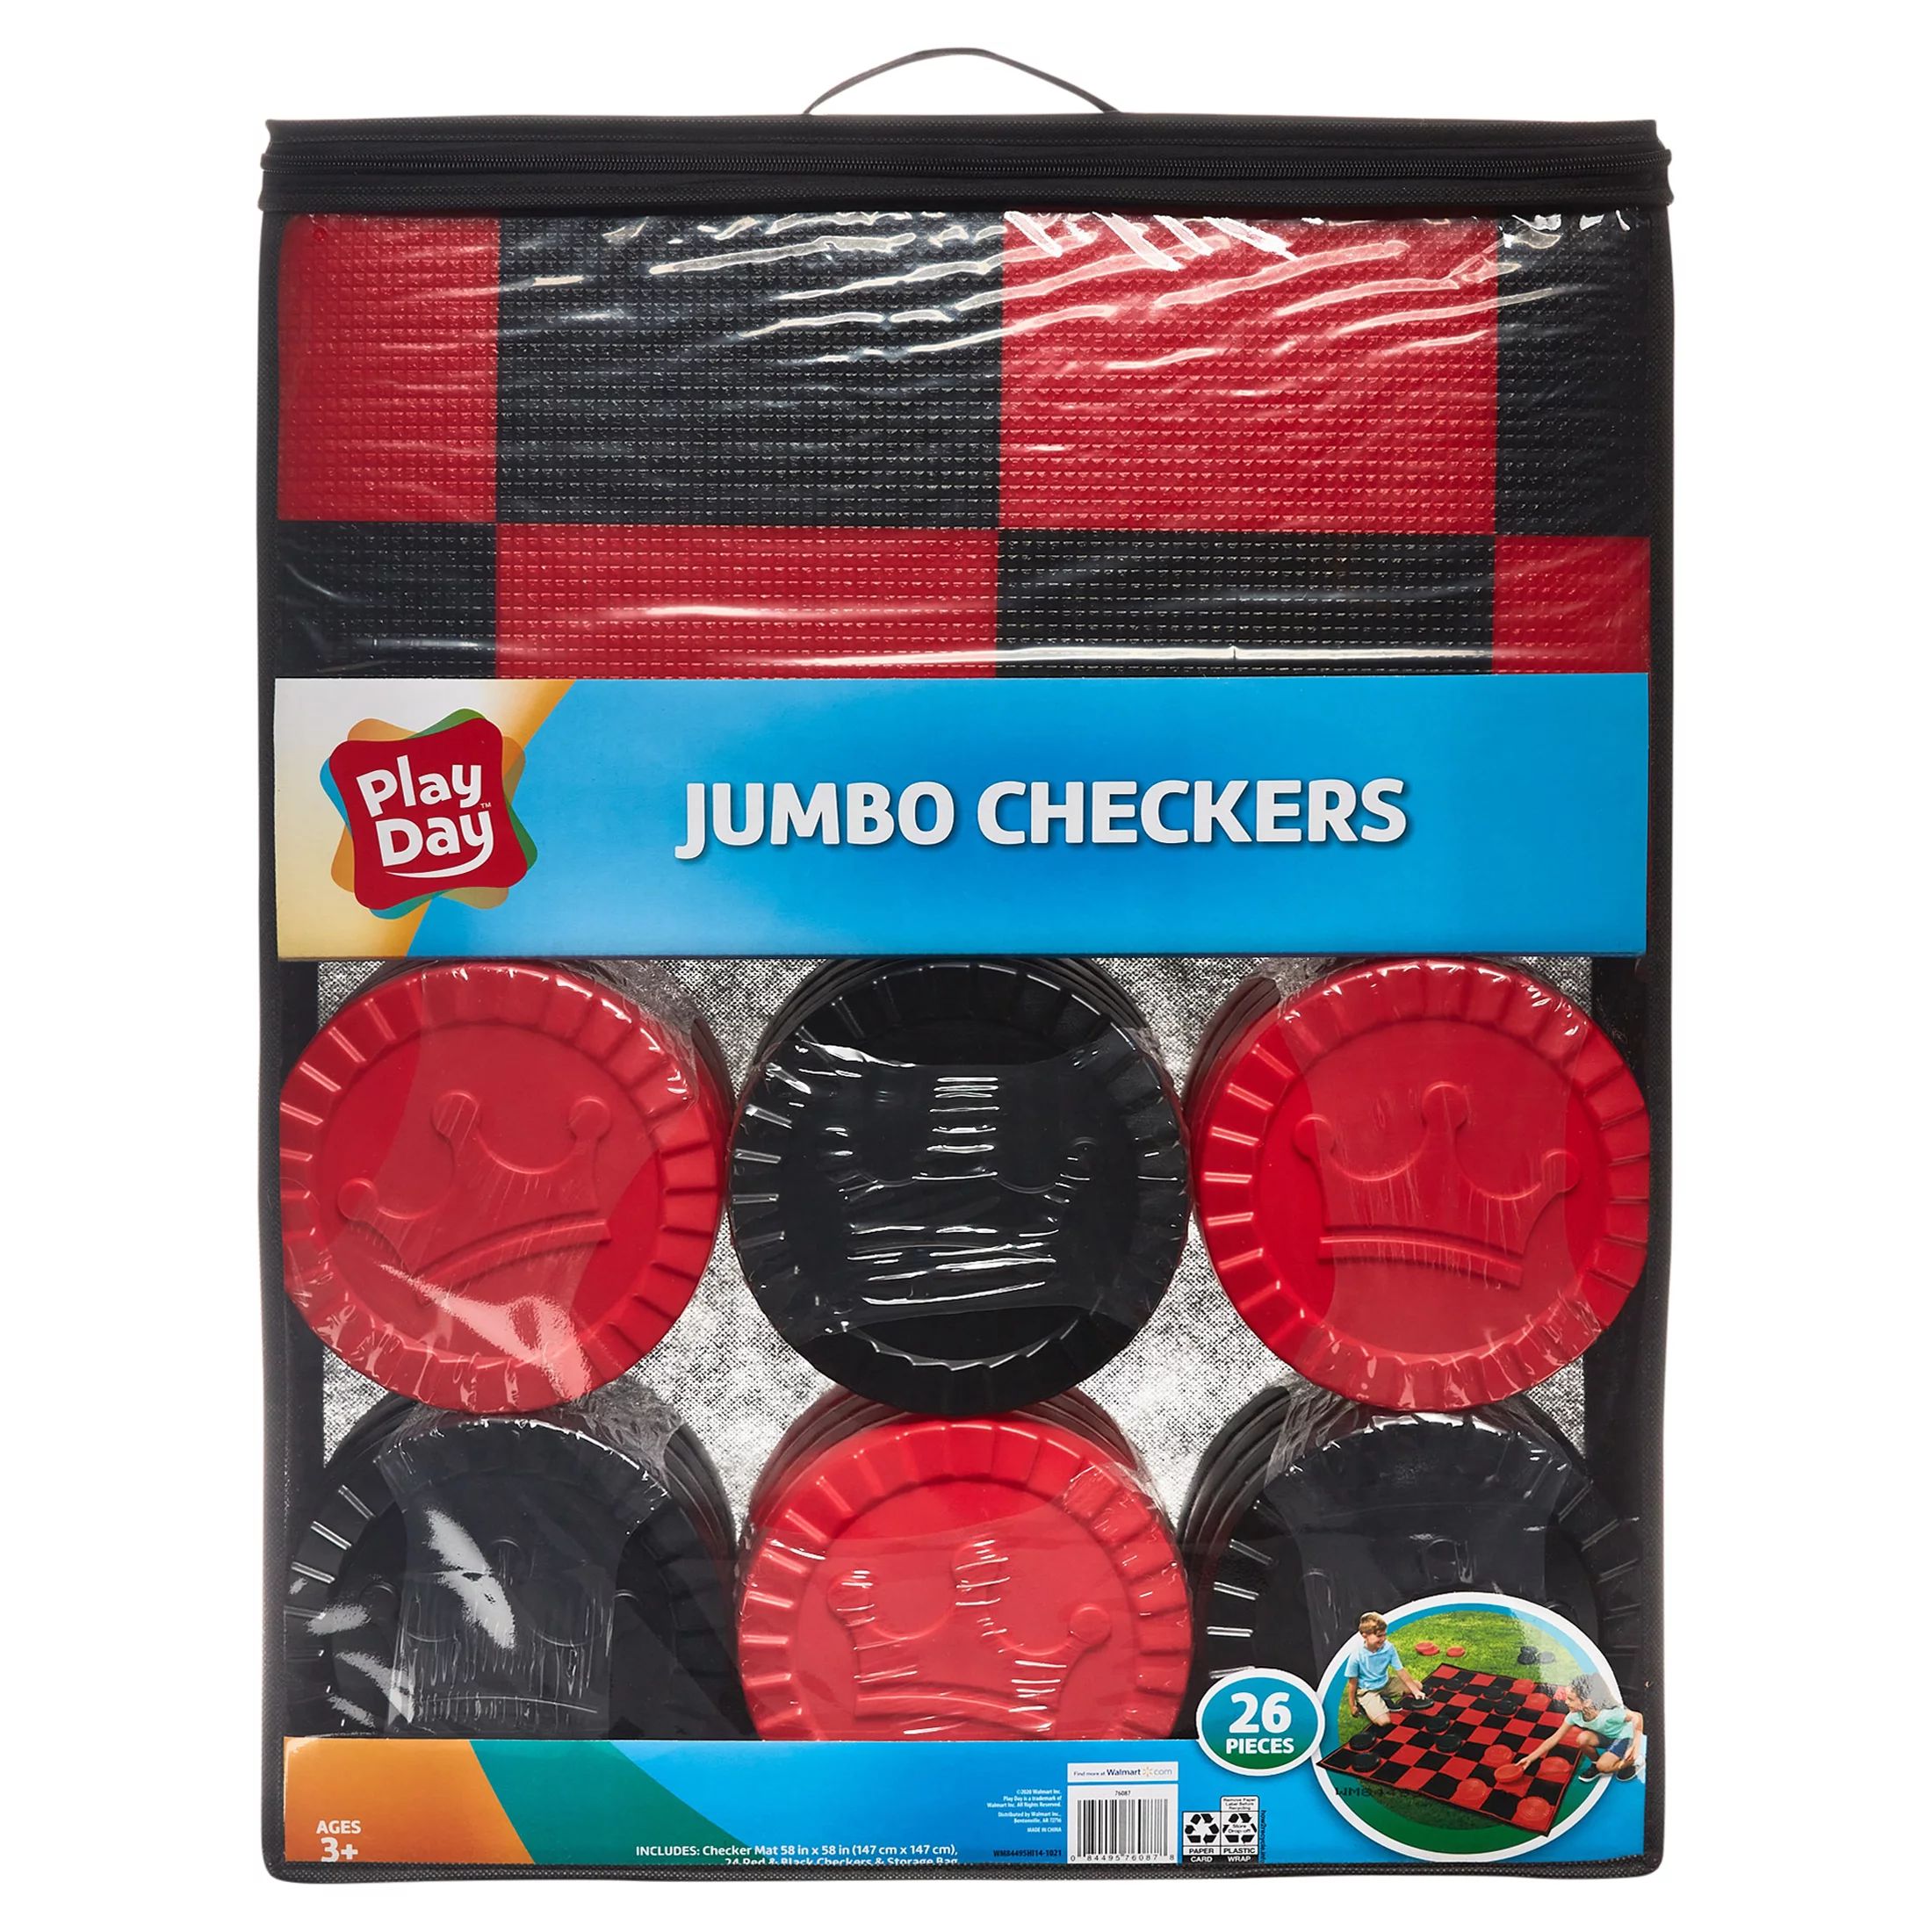 Play Day Jumbo Checkers Play Set | Walmart (US)